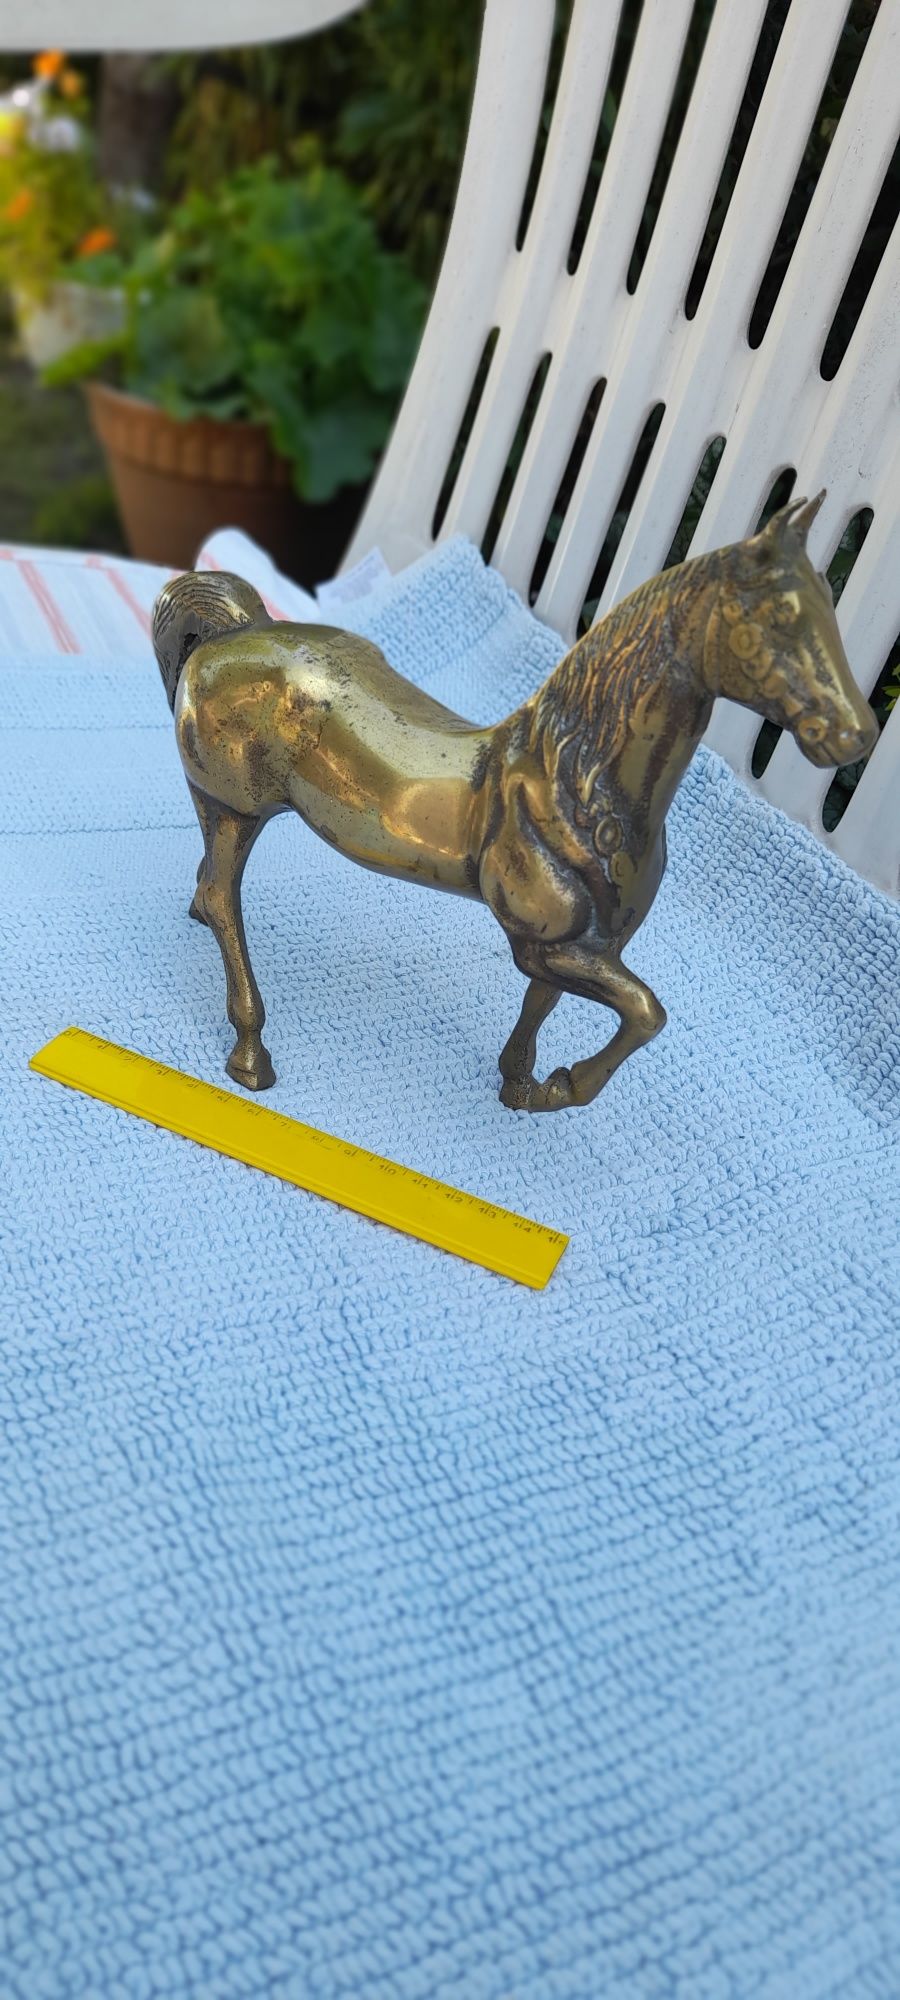 Kon mosiezny figurka konia z pelnego mosiadzu 3,1kg